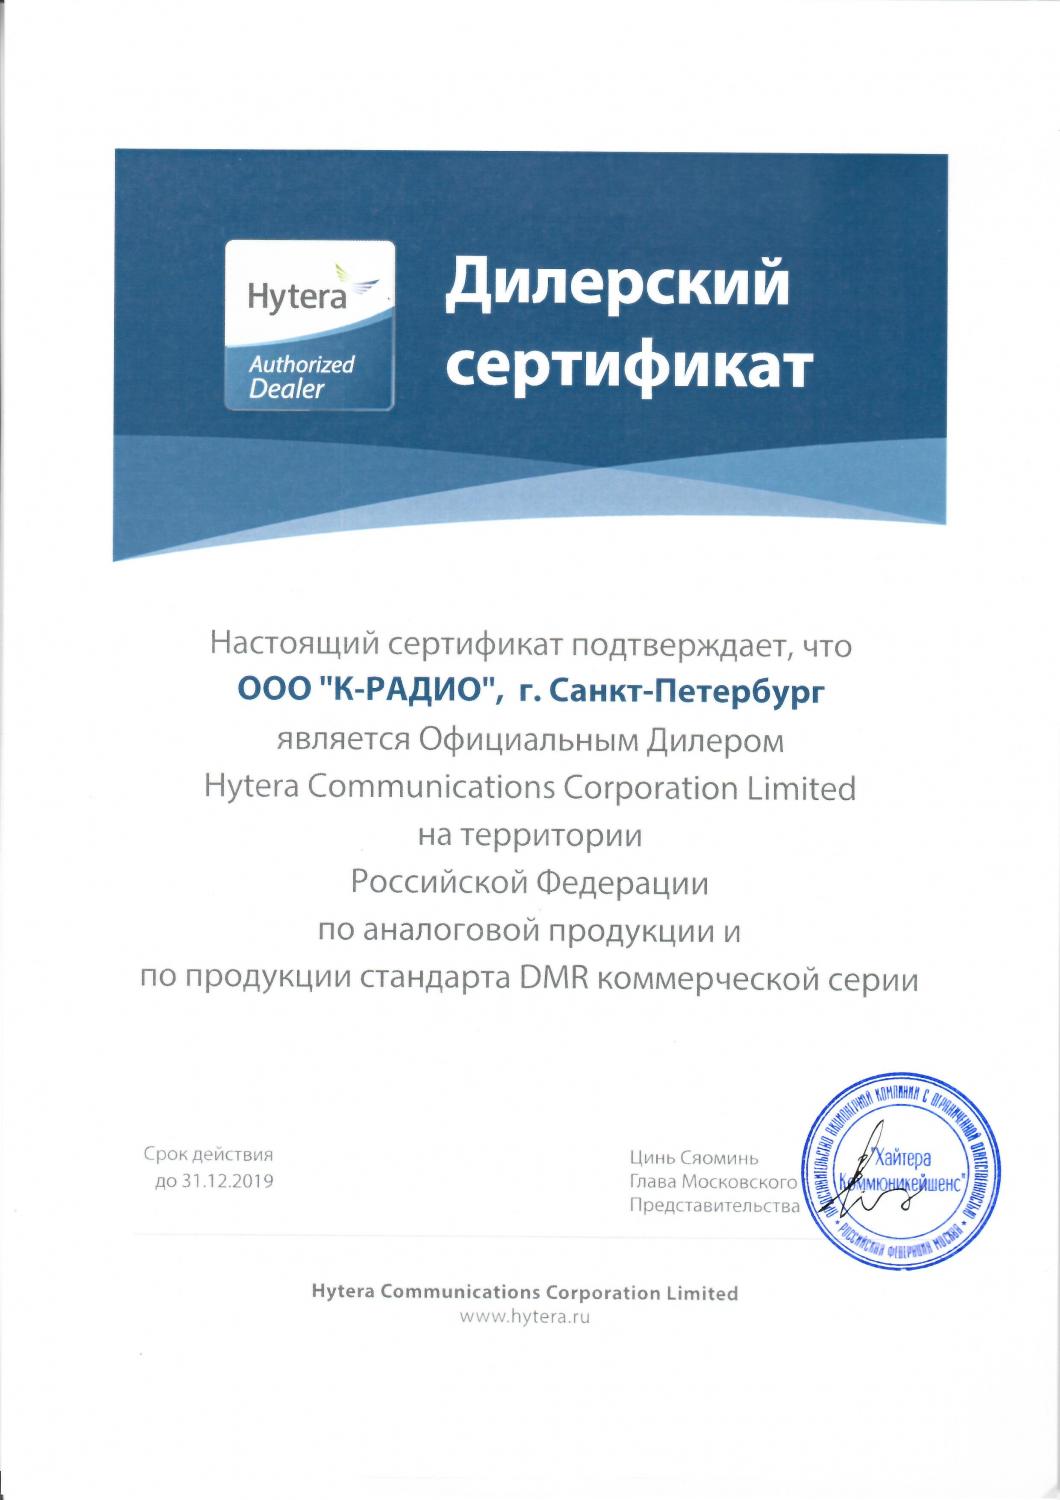 Сертификат авторизованного дилера Hytera